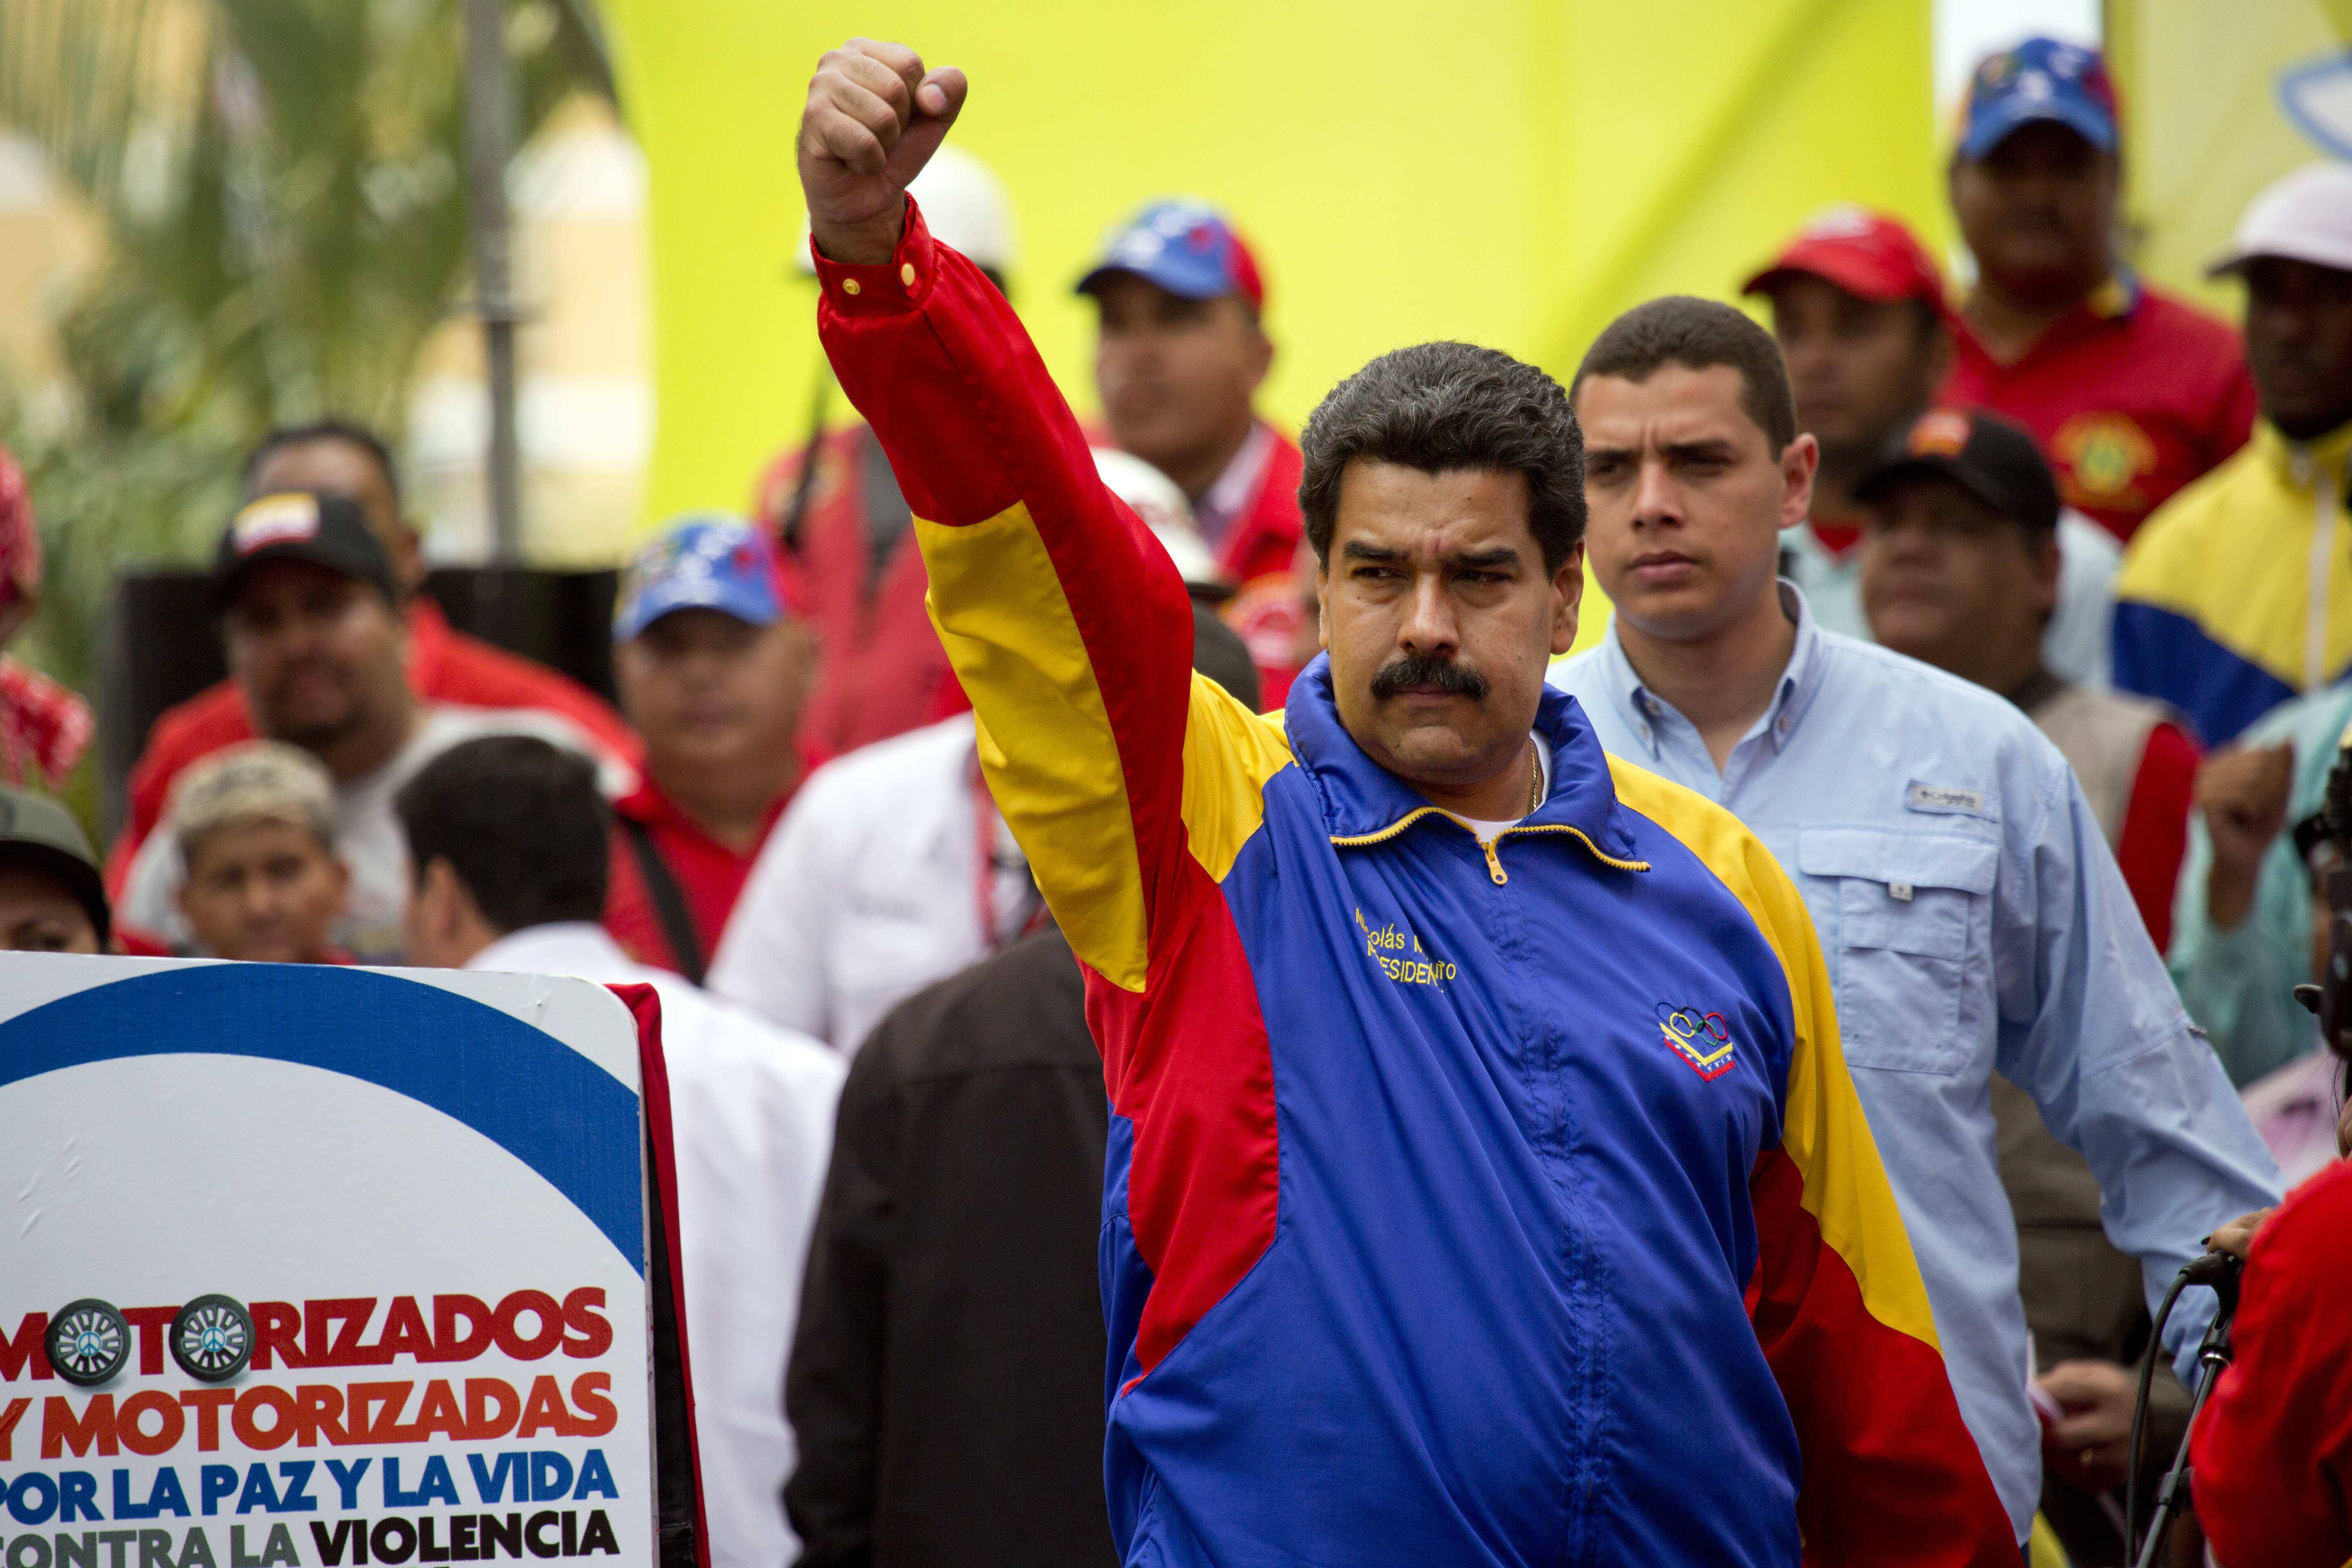 Η Ουάσινγκτον δεν θα αναγνωρίσει τα αποτελέσματα των εκλογών στη Βενεζουέλα